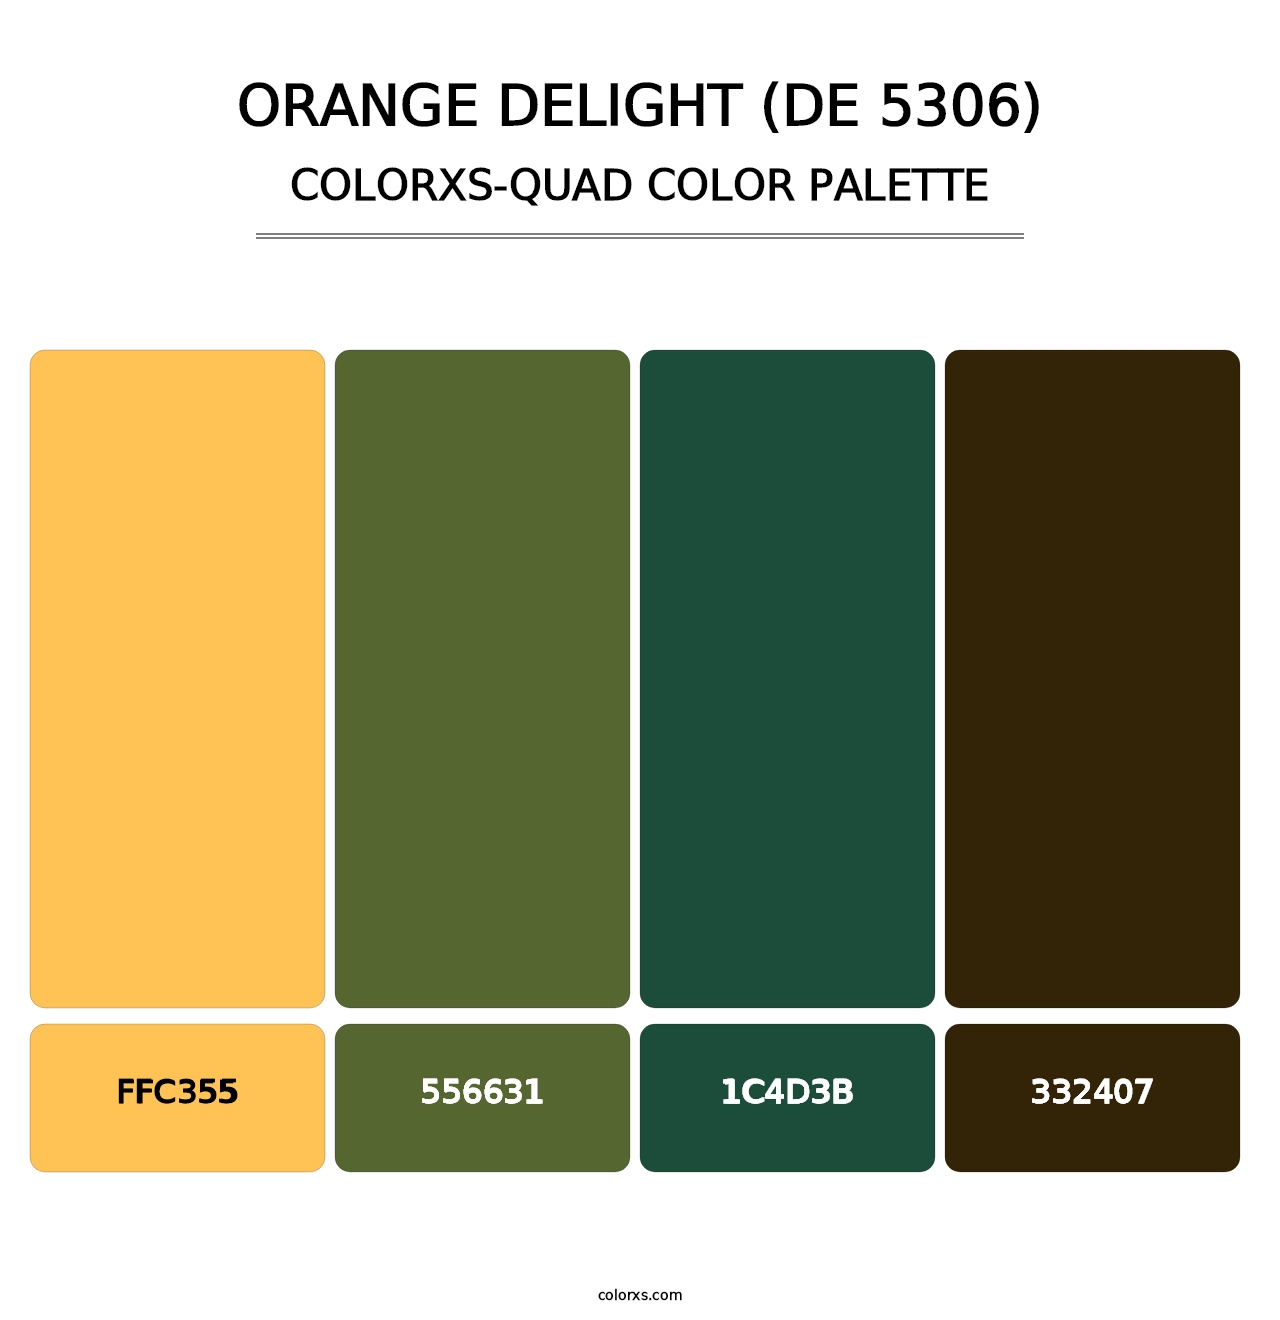 Orange Delight (DE 5306) - Colorxs Quad Palette